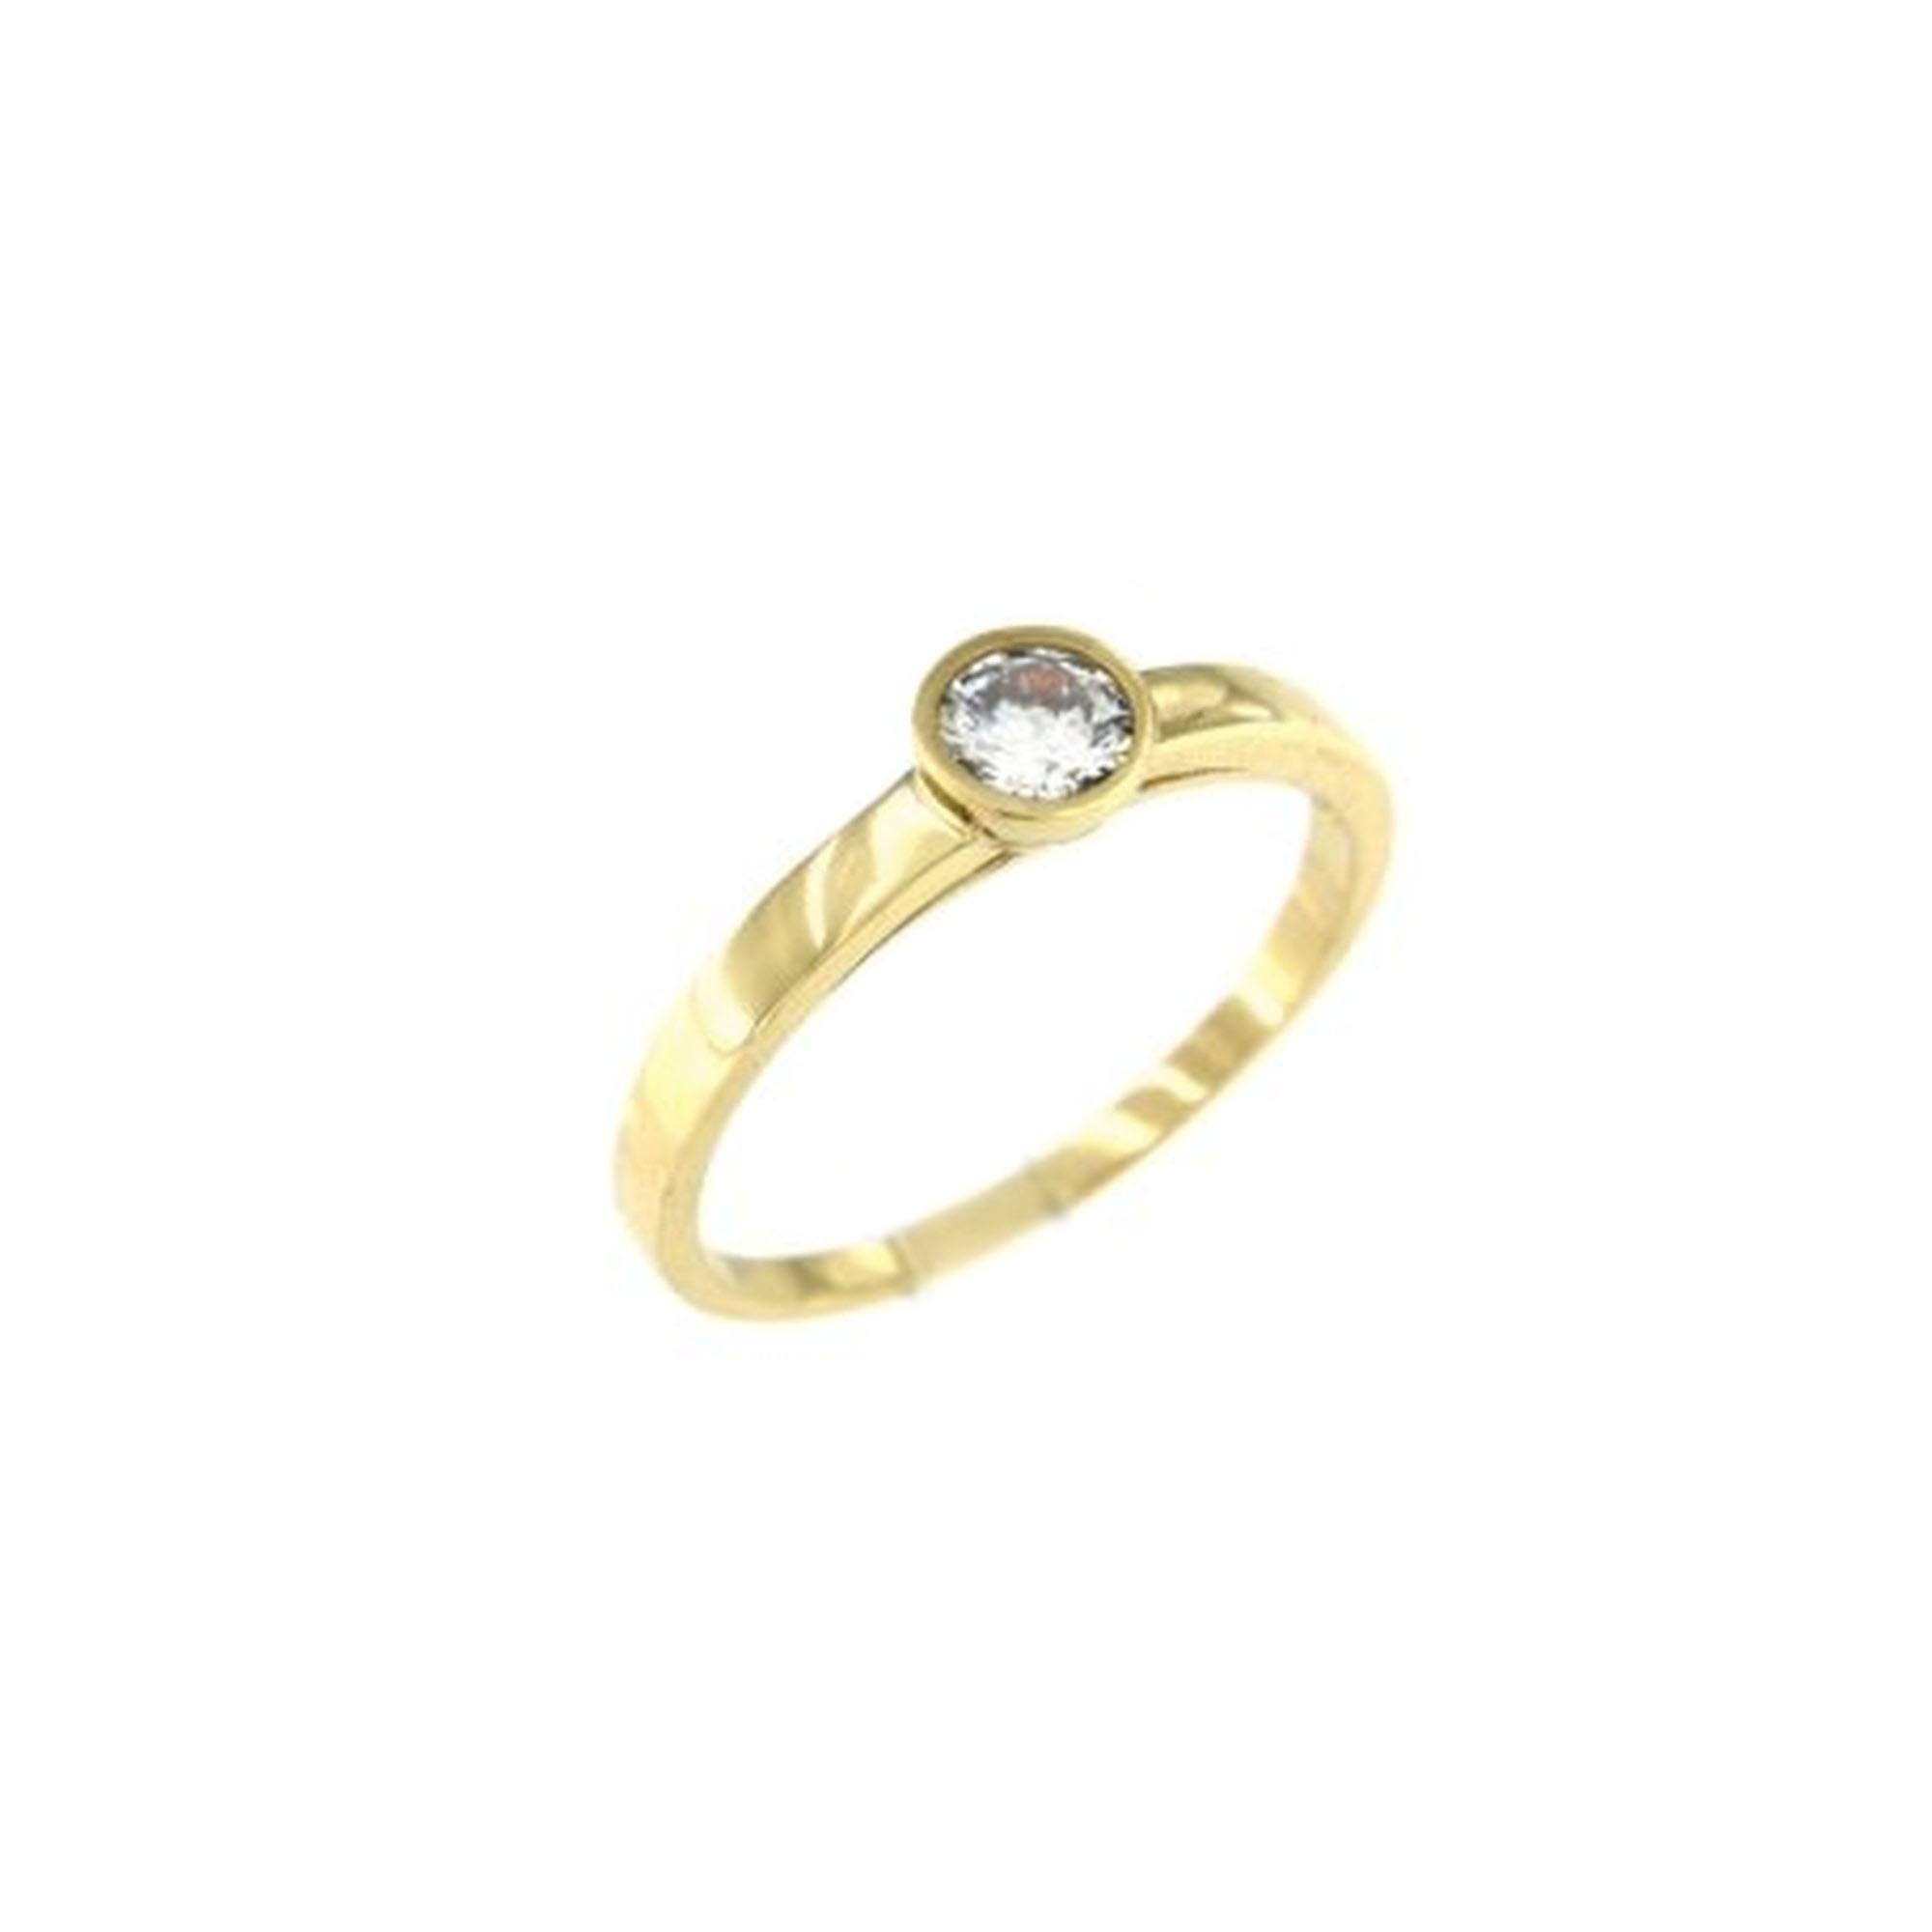 MOISS Moiss prsten ze žlutého zlata ANETA RA000201 Velikost 53 mm RA000201 + doprava ZDARMA